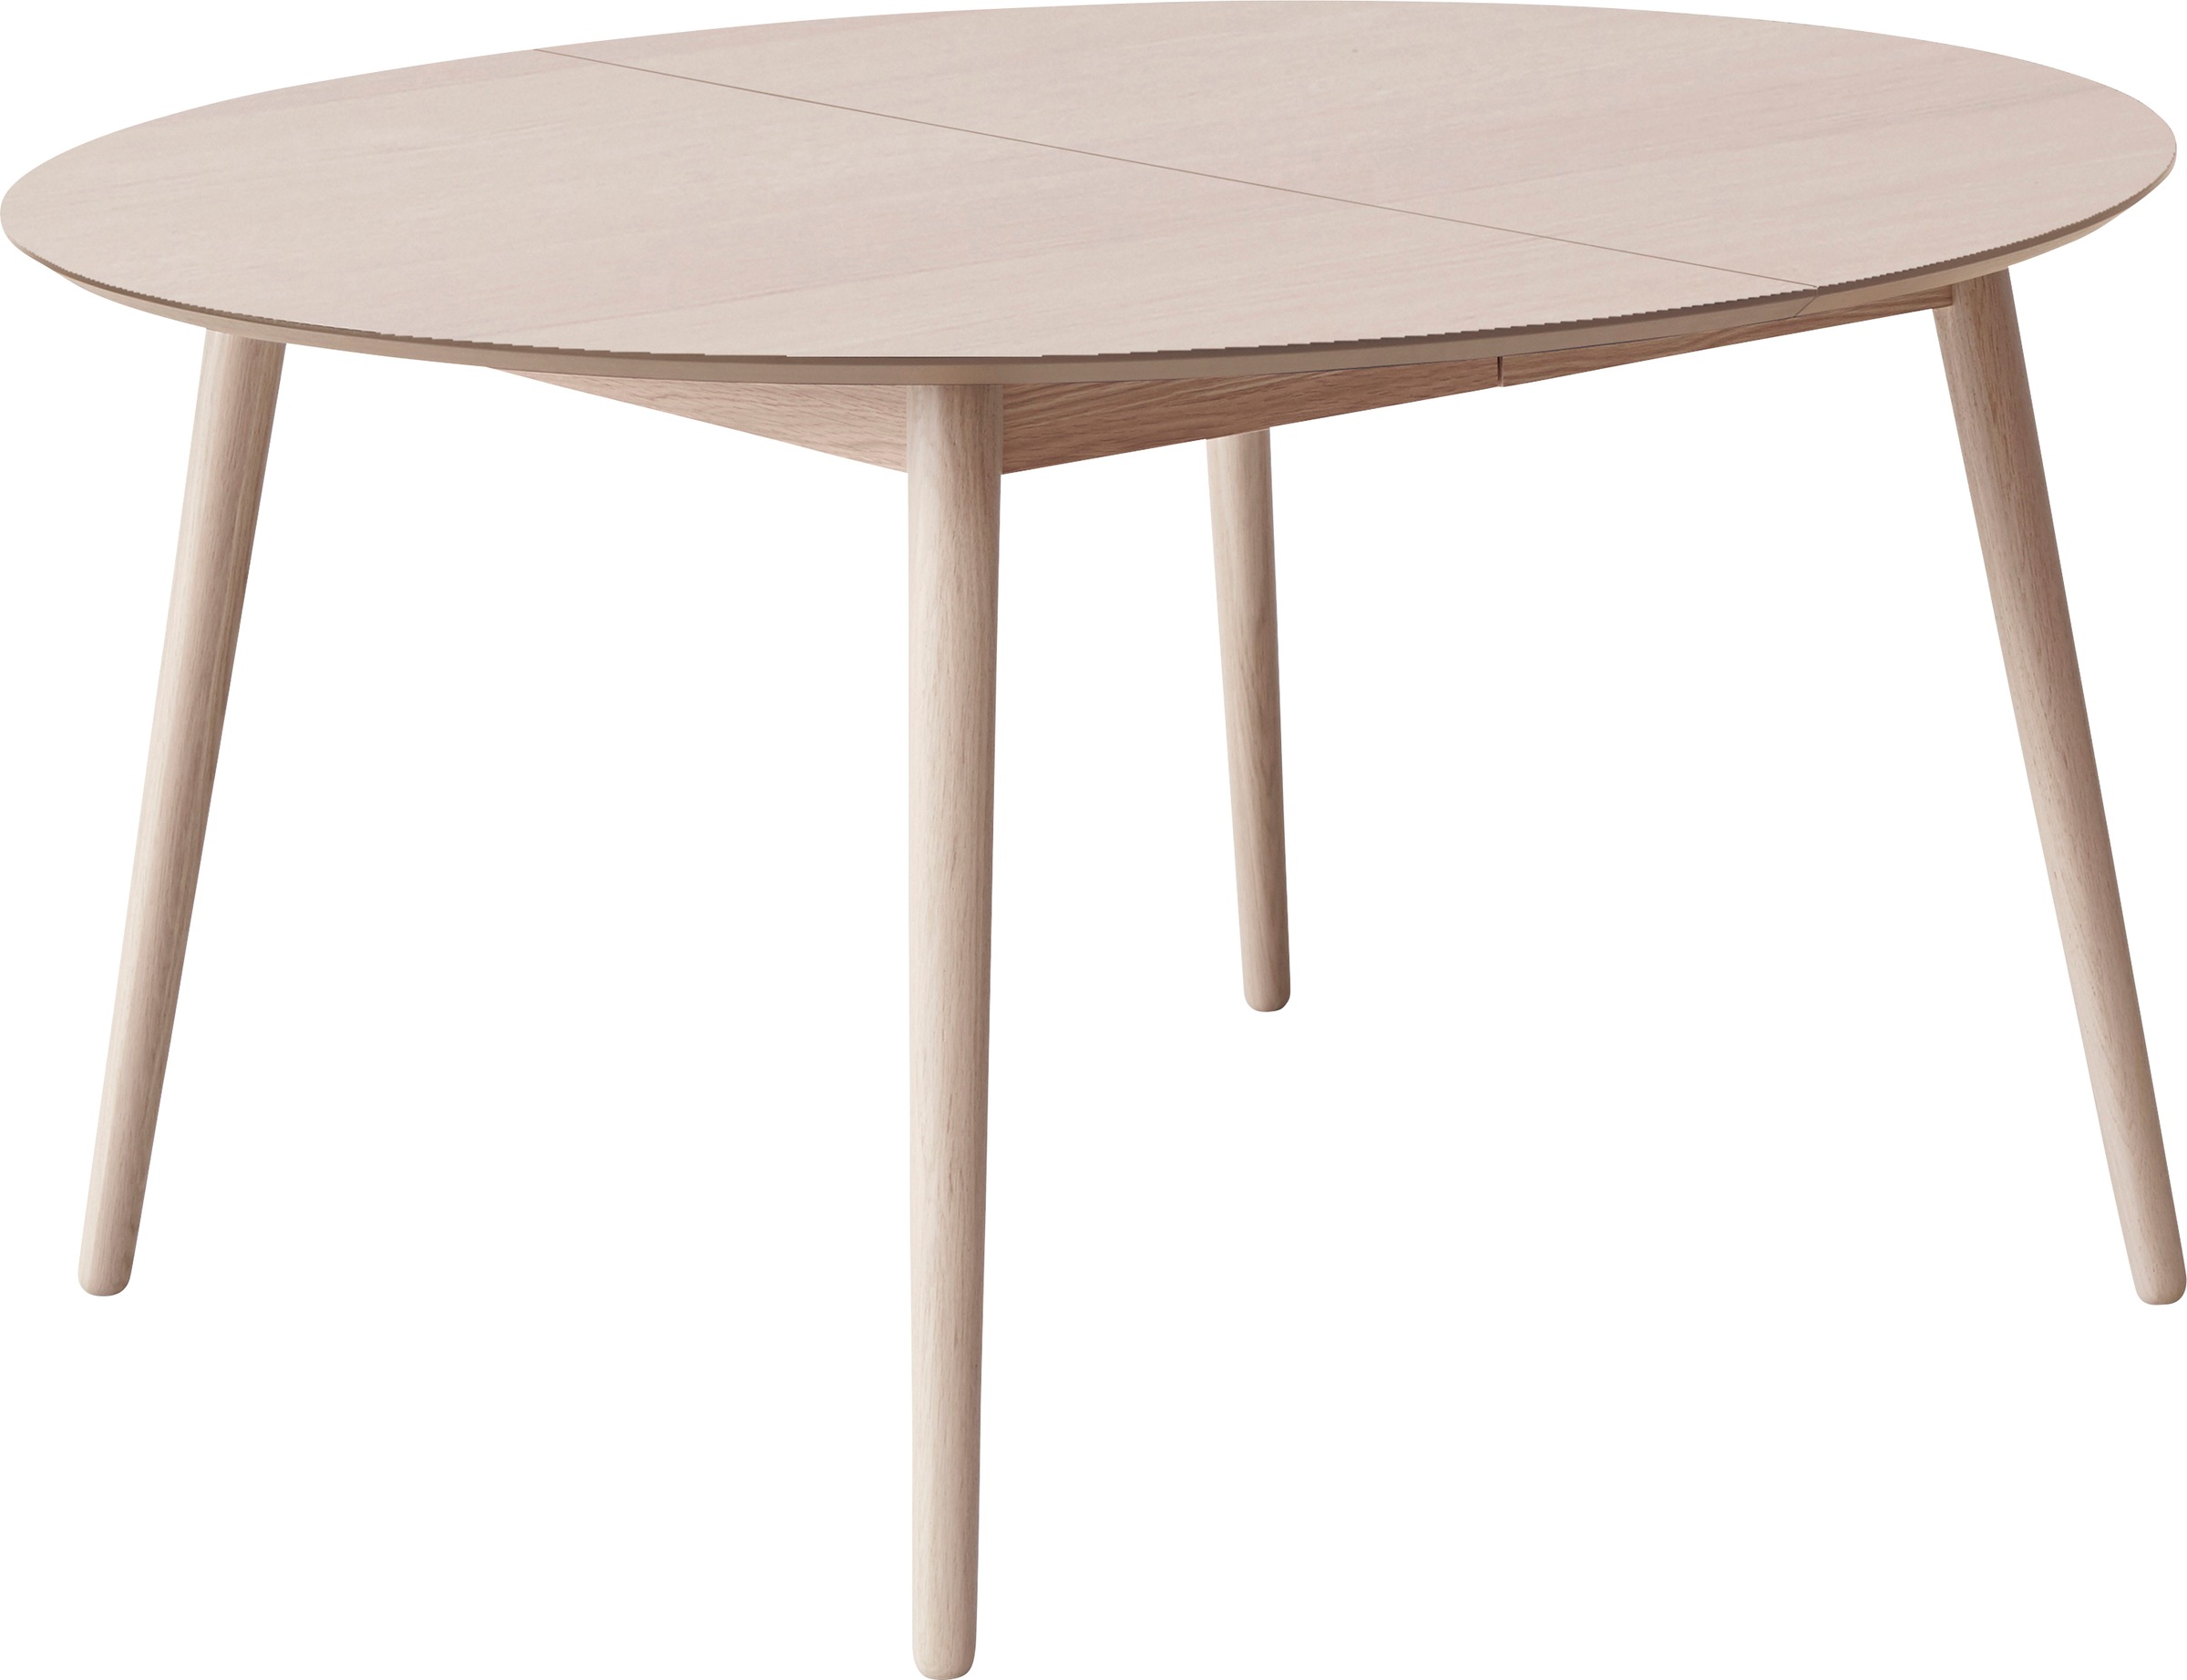 Hammel Furniture Esstisch »Meza by Hammel«, Ø135(231) cm, runde Tischplatte aus MDF/Laminat, Massivholzgestell